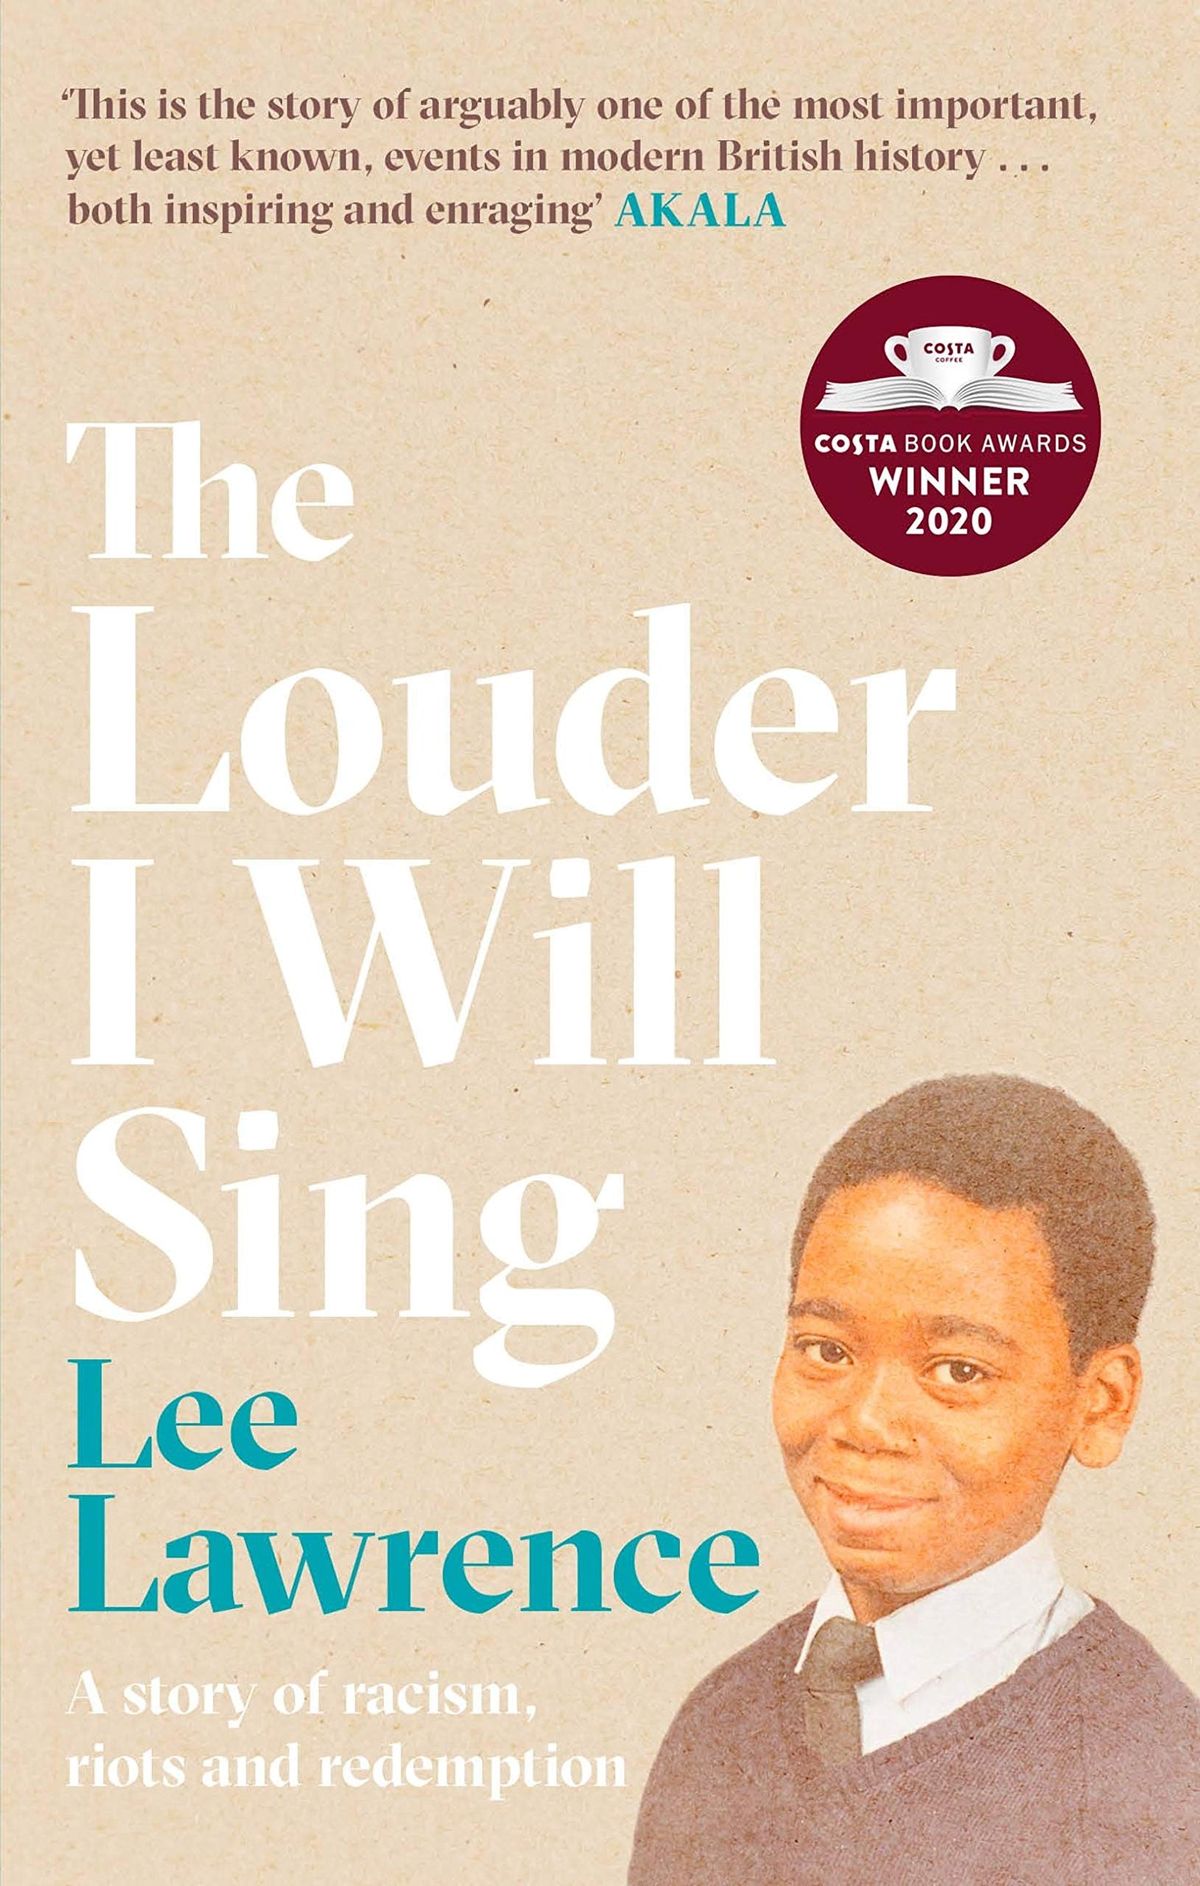 Głośniej będę śpiewać Lee Lawrence to opowieść o sile pokoleniowej — FRAGMENT